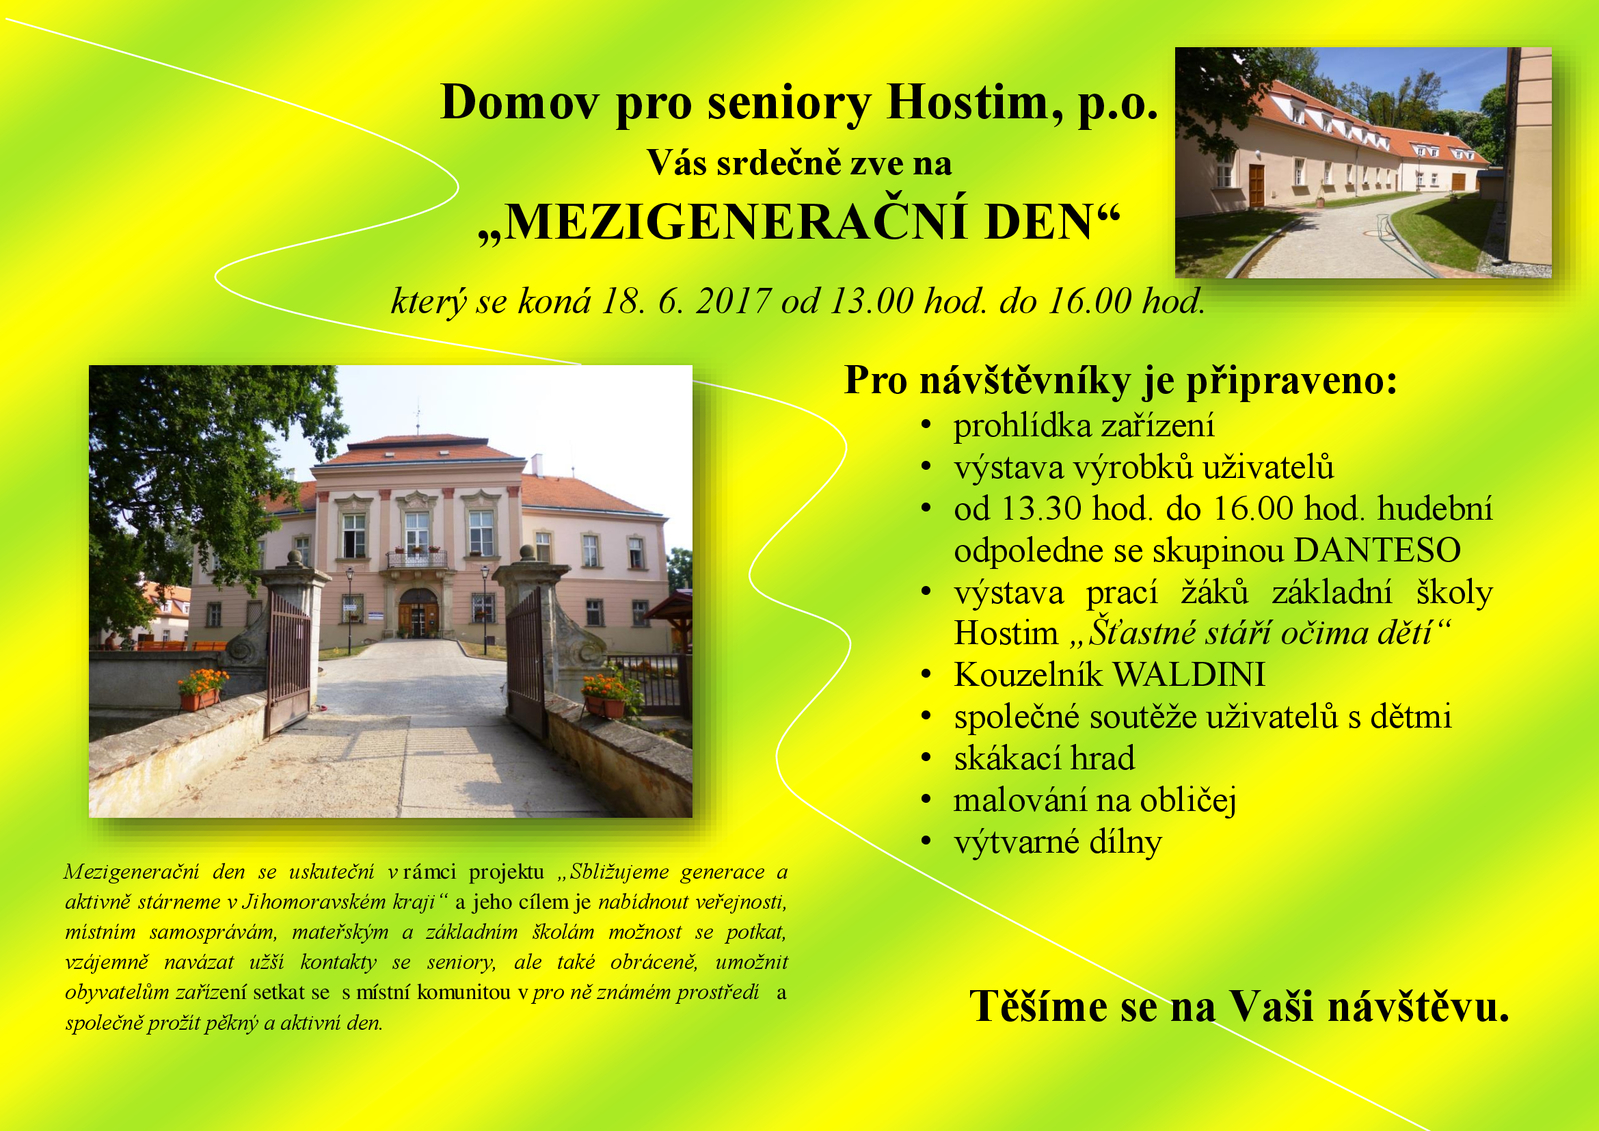 Domov-pro-seniory-Hostim-MD.jpg